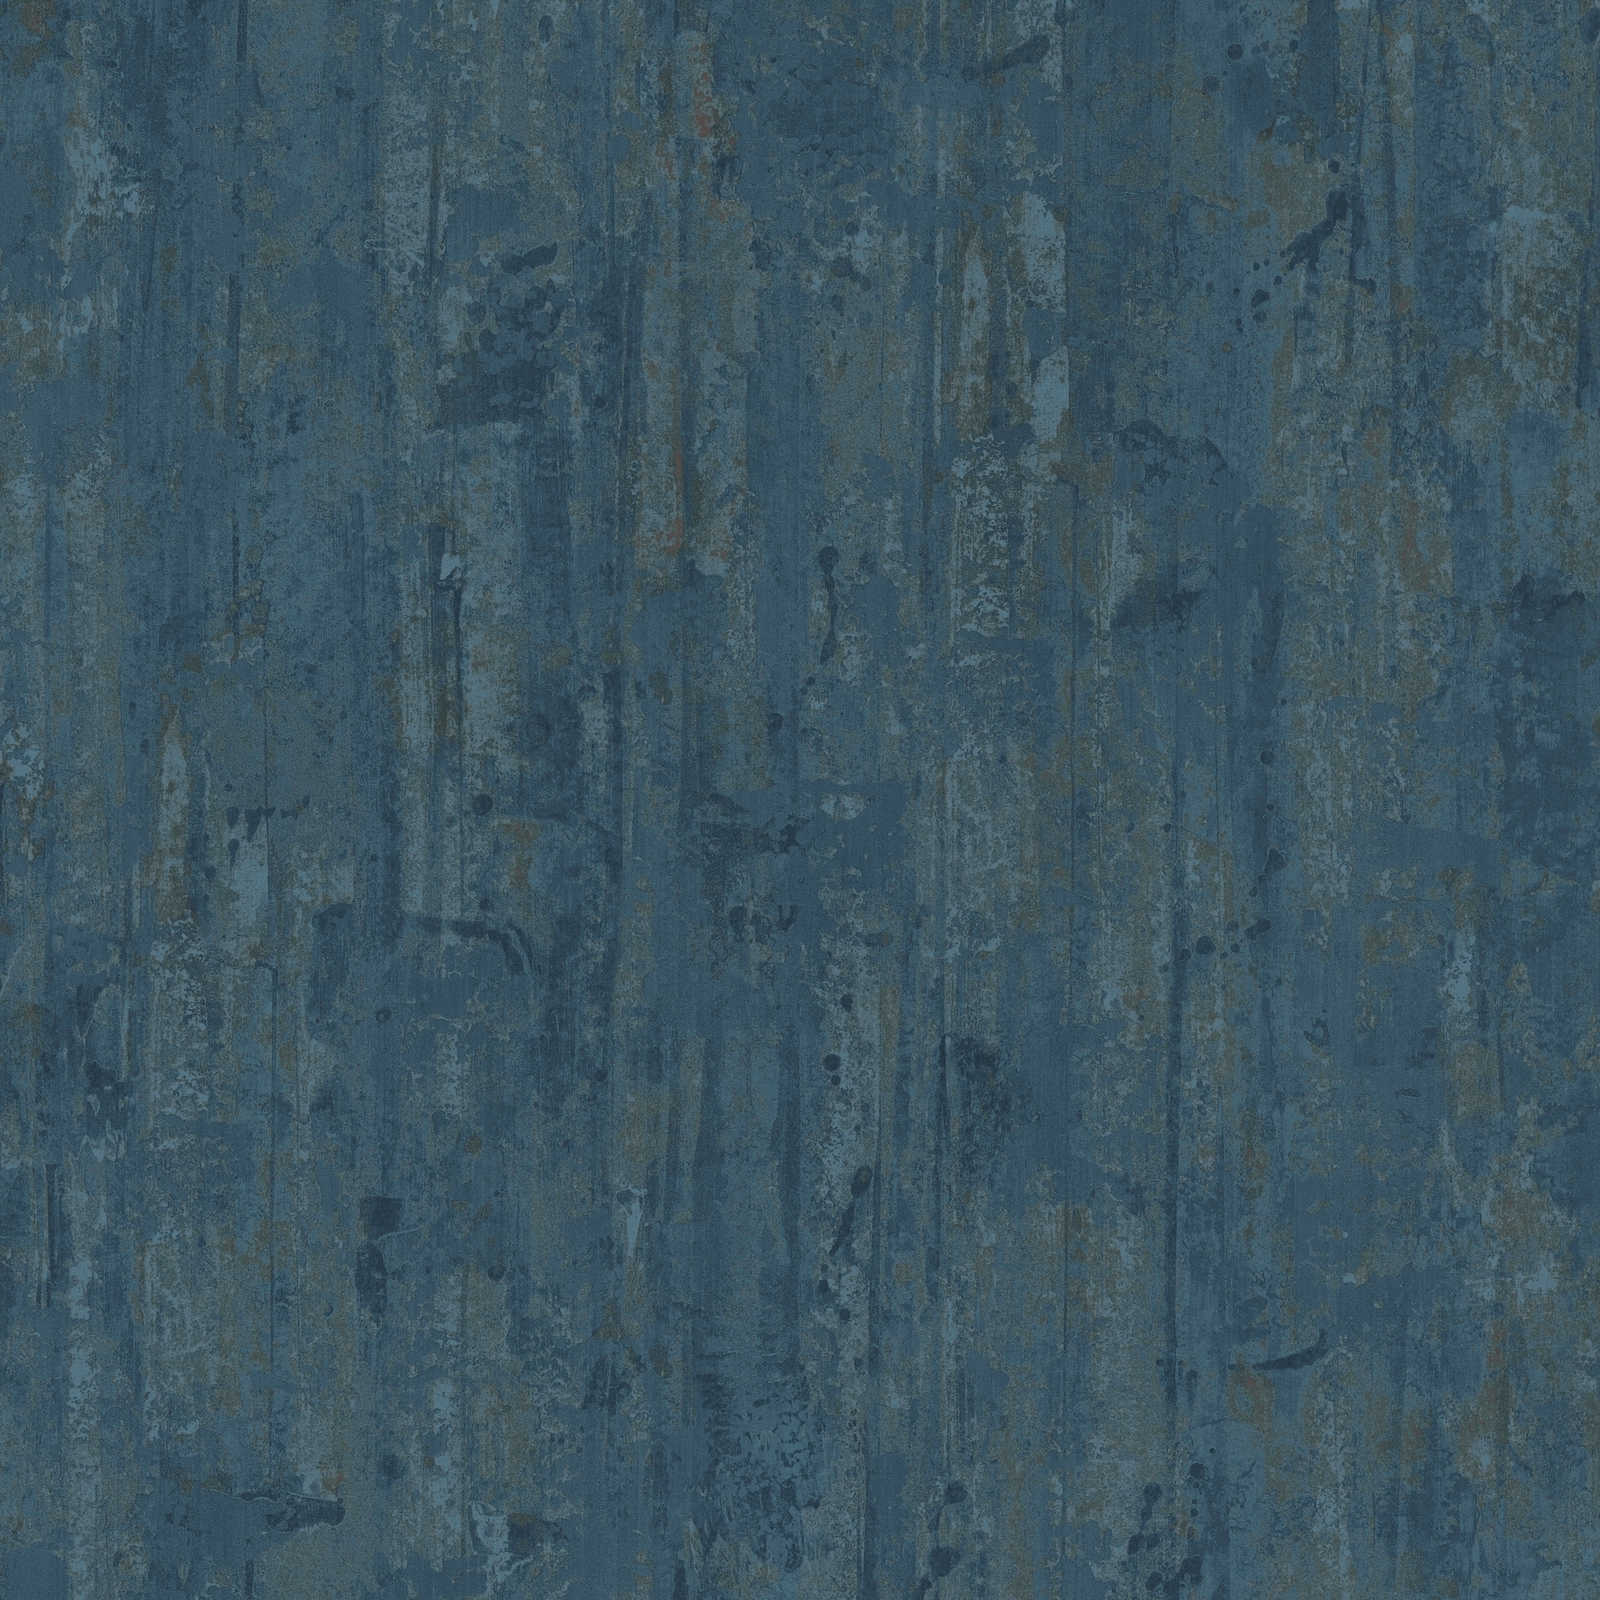 Ethno behang met structuurpatroon in houtlook - blauw
